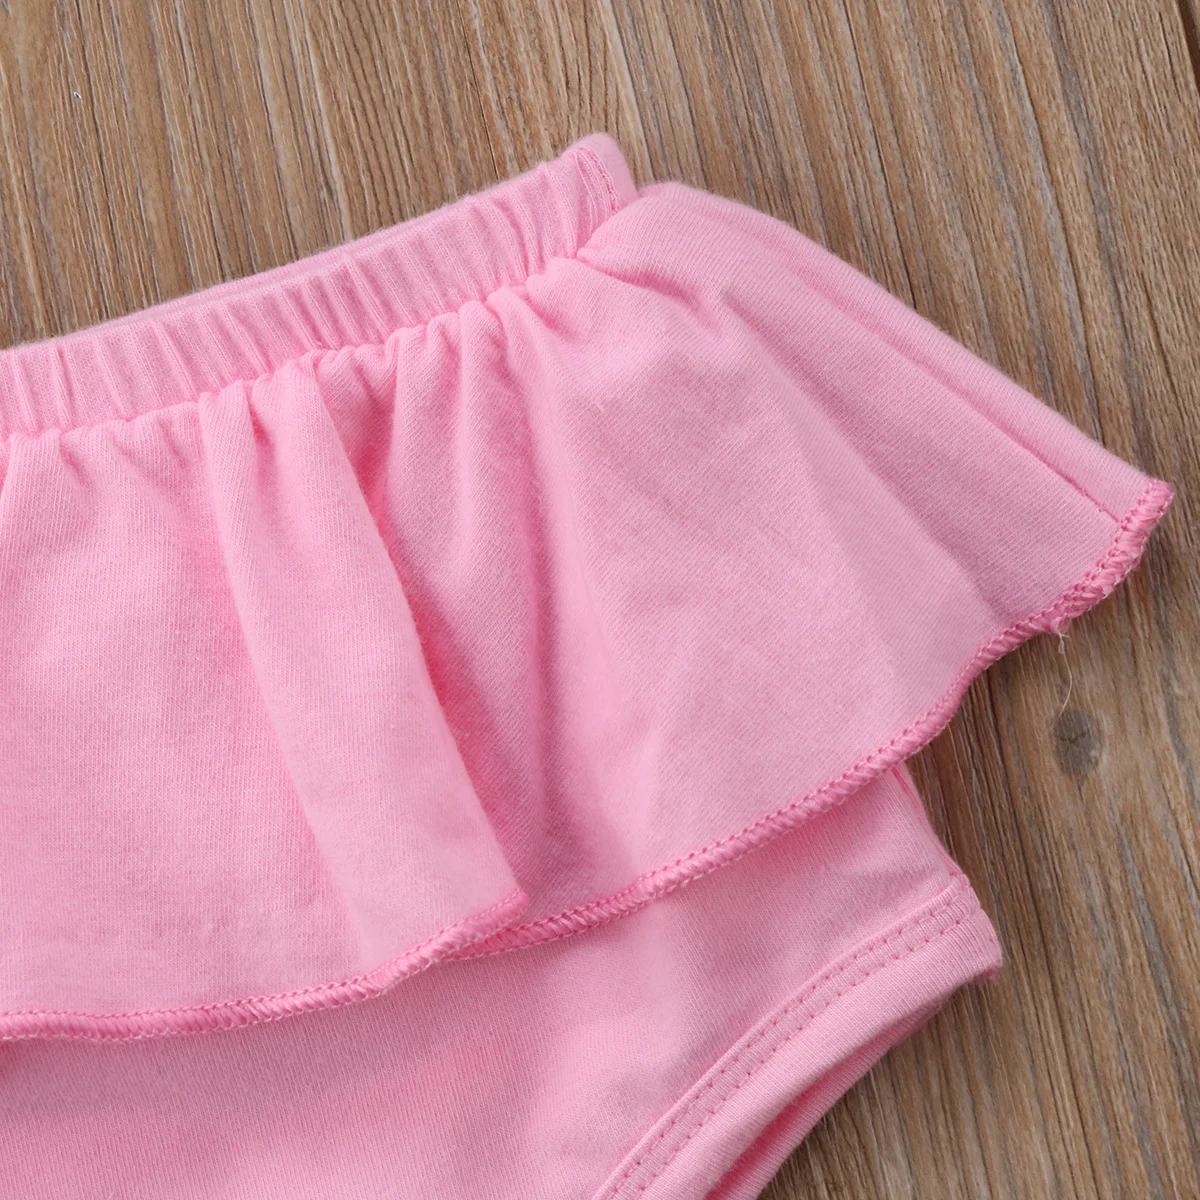 Для новорожденных, одежда для детей и малышей плотное платье для девочек, Короткие штаны-шаровары брюки PP штаны-шаровары Летние Симпатичные Пользовательские трусики на возраст от 0 до 24 месяцев